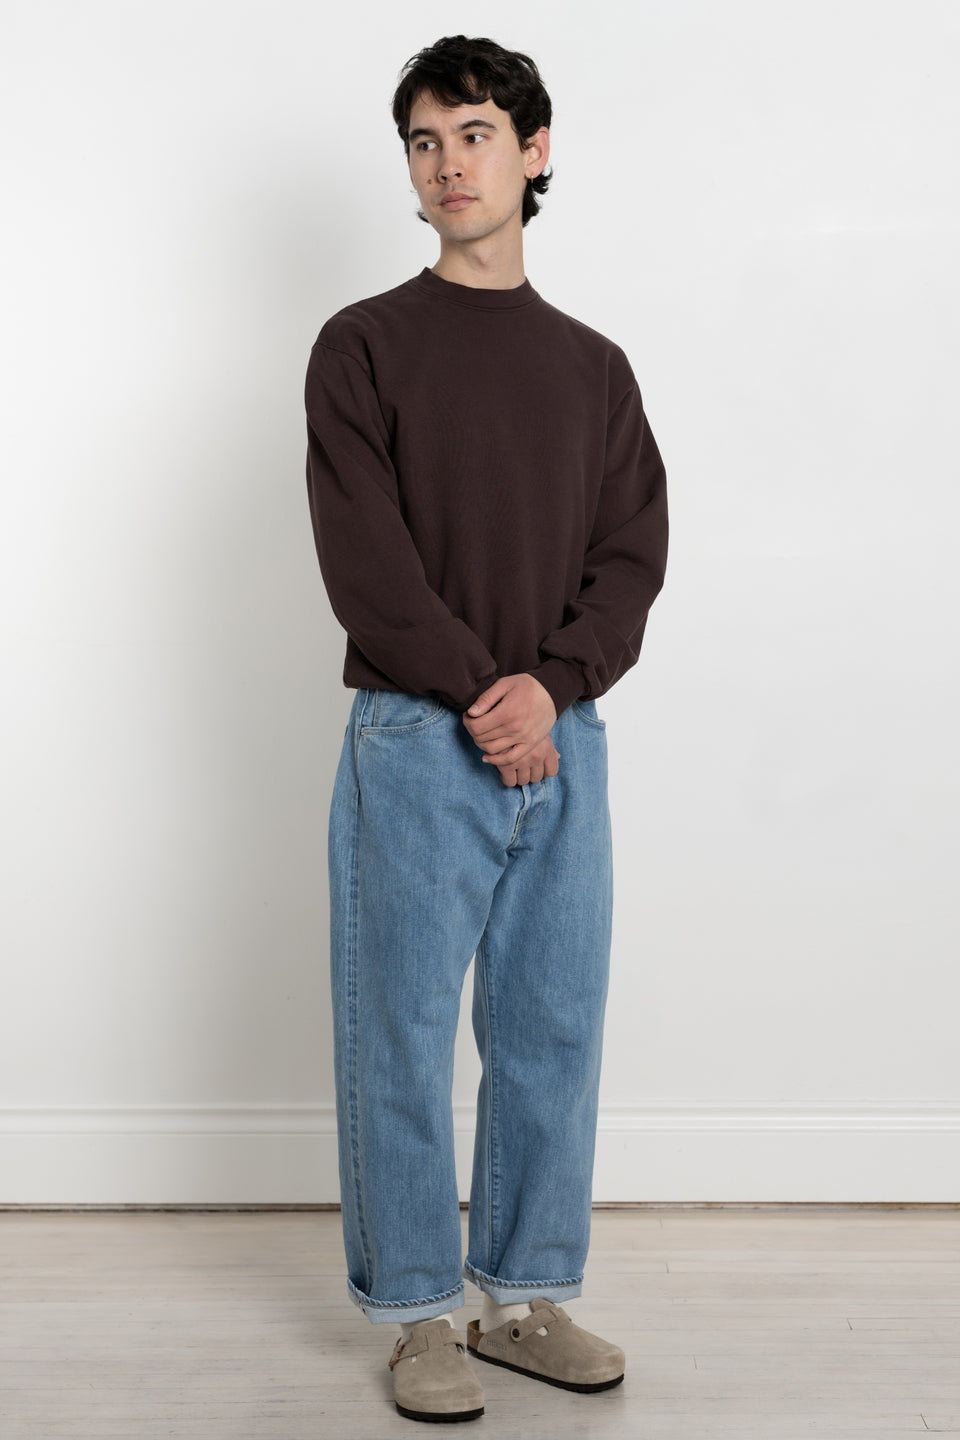 Garment Dyed US Cotton Heavy Fleece Crewneck Sweatshirt Men's Made in USA Calculus Online